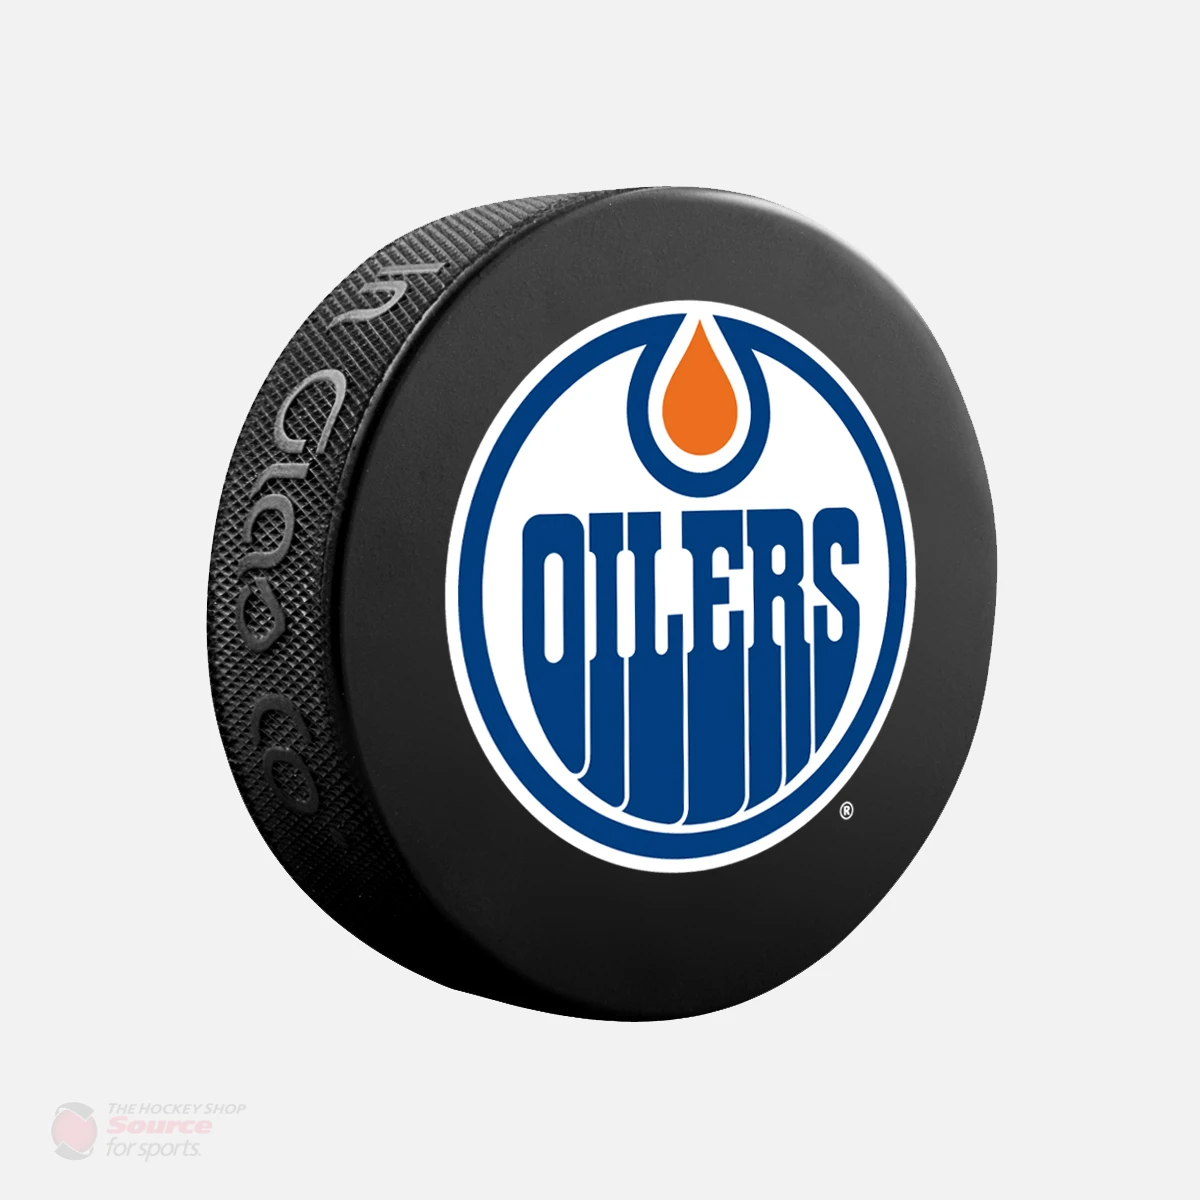 Wayne Gretzky Autographed Edmonton Oilers Puck - NHL Auctions